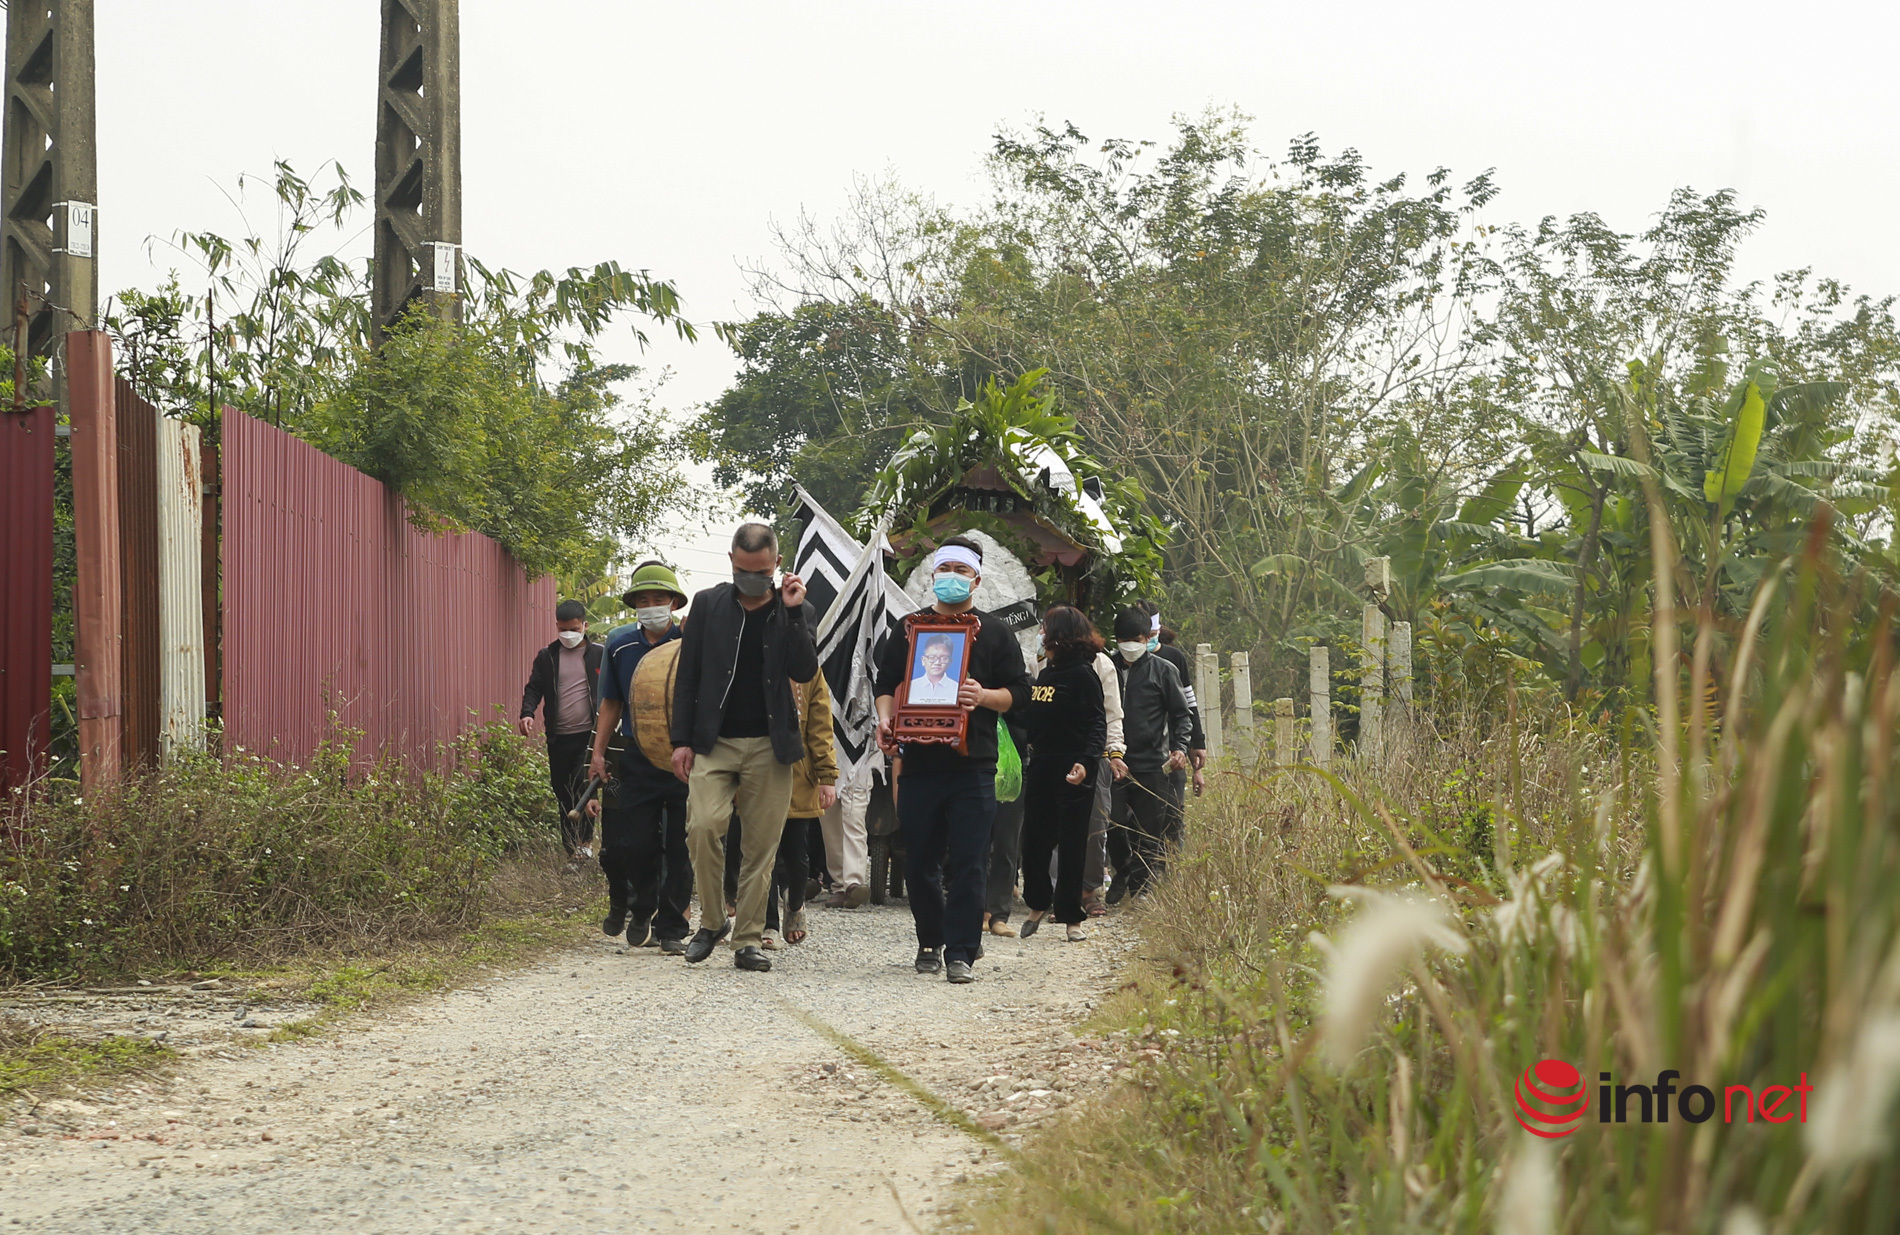 Vụ chìm ca nô ở Quảng Nam: Tang thương bao trùm làng quê, nhiều nạn nhân là anh em